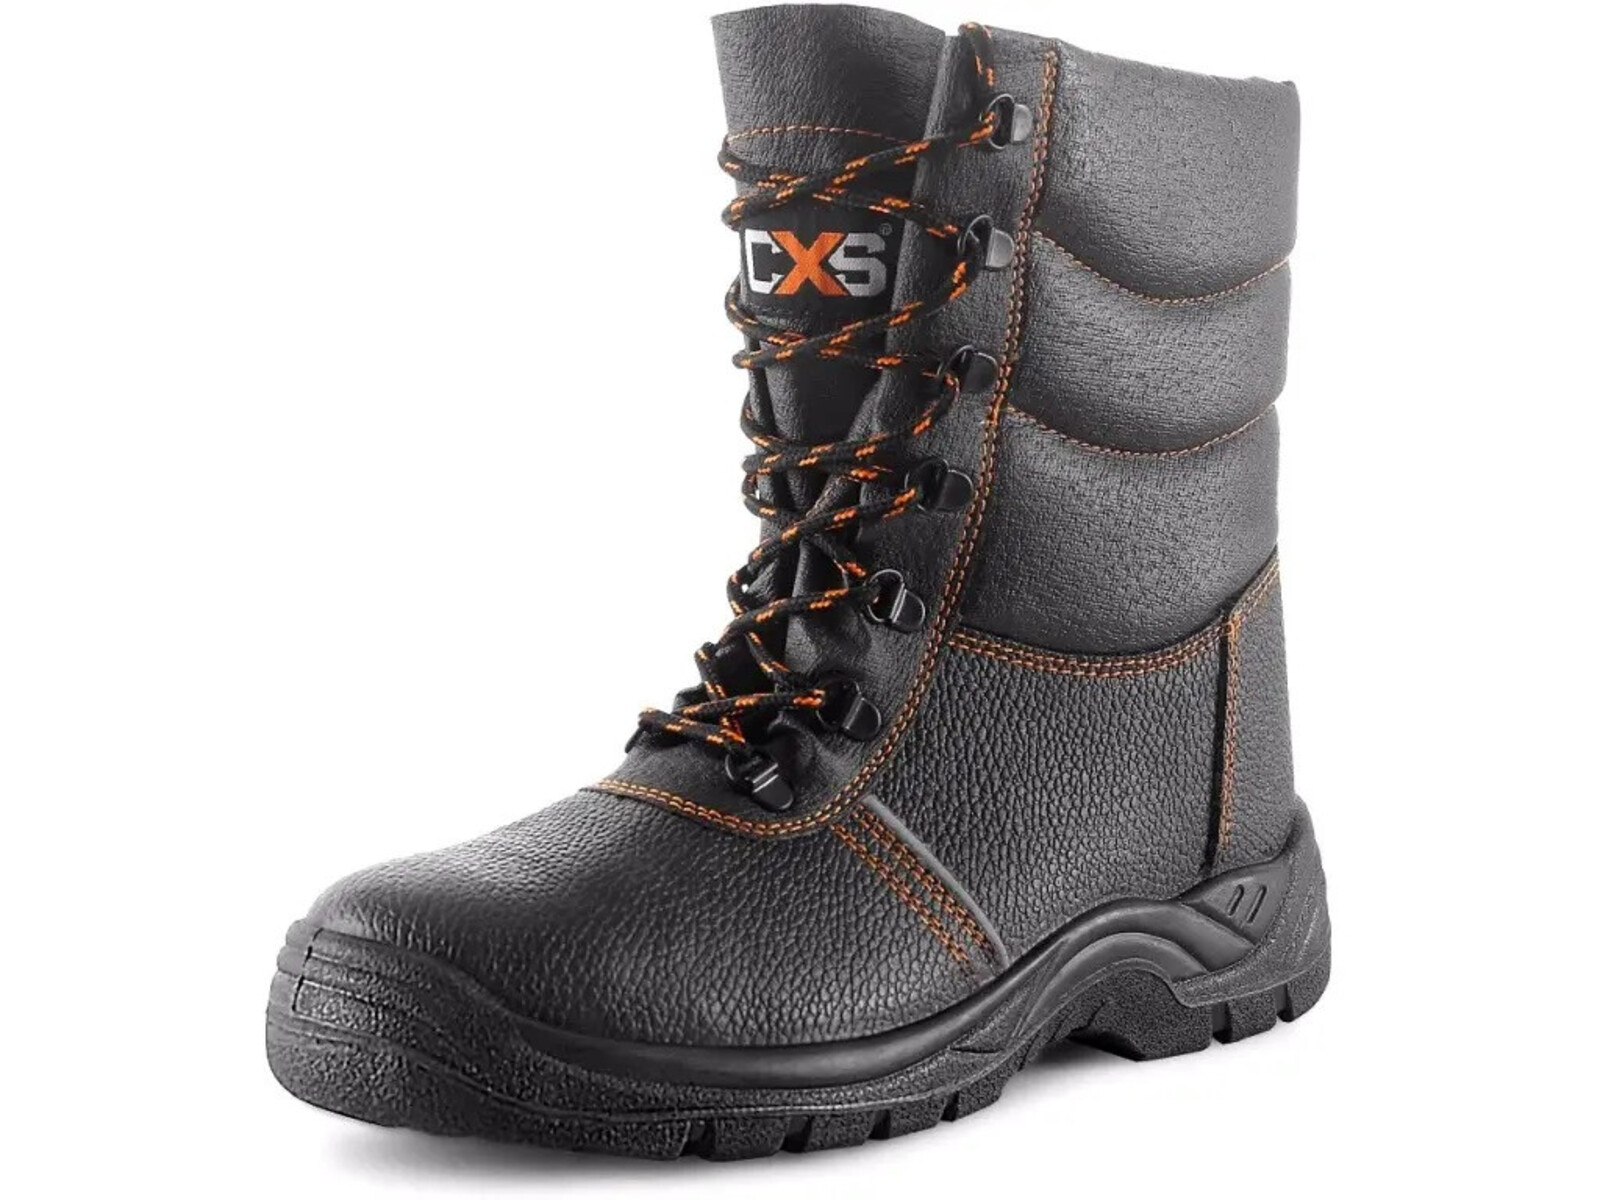 Zimná bezpečnostná poloholeňová obuv CXS Stone Topaz Winter S3 SRC - veľkosť: 48, farba: čierna/oranžová